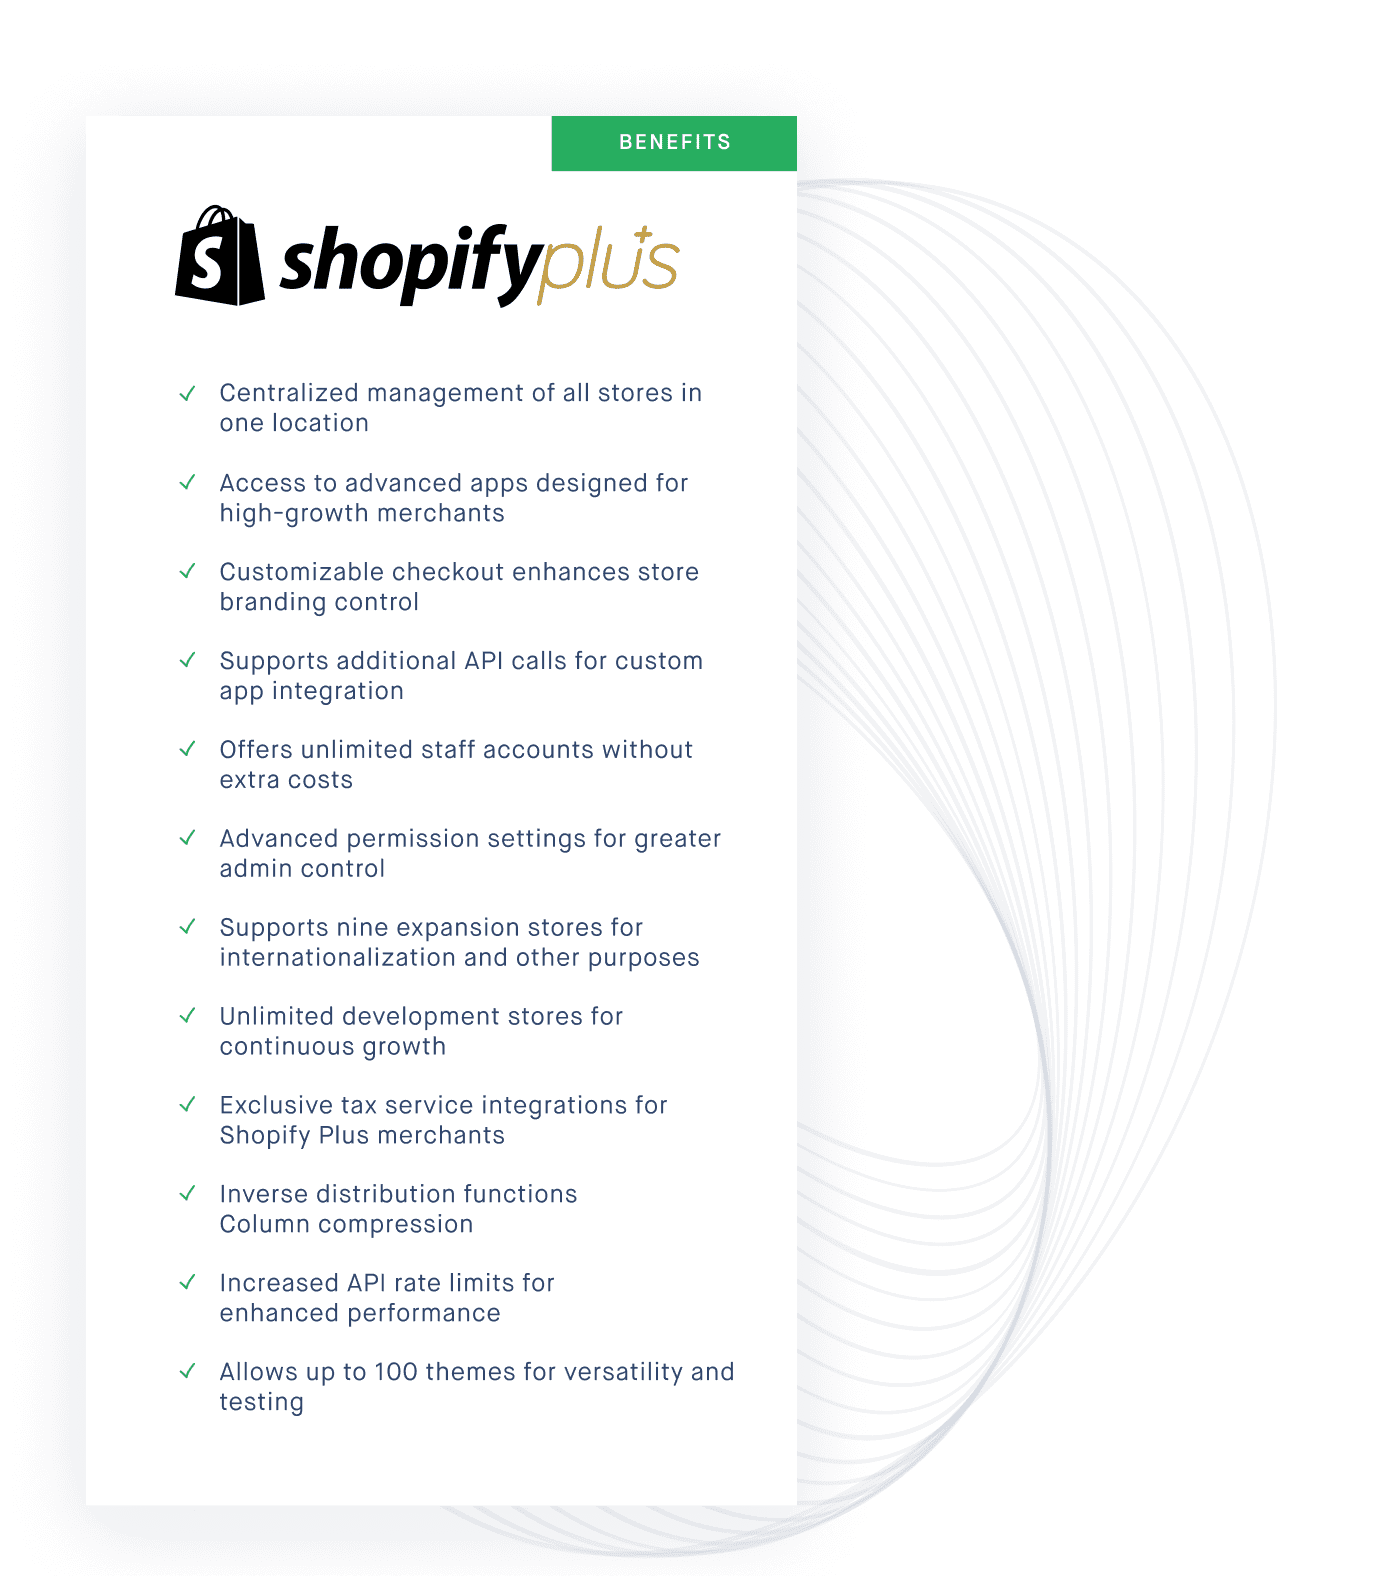 Shopify plus benefits